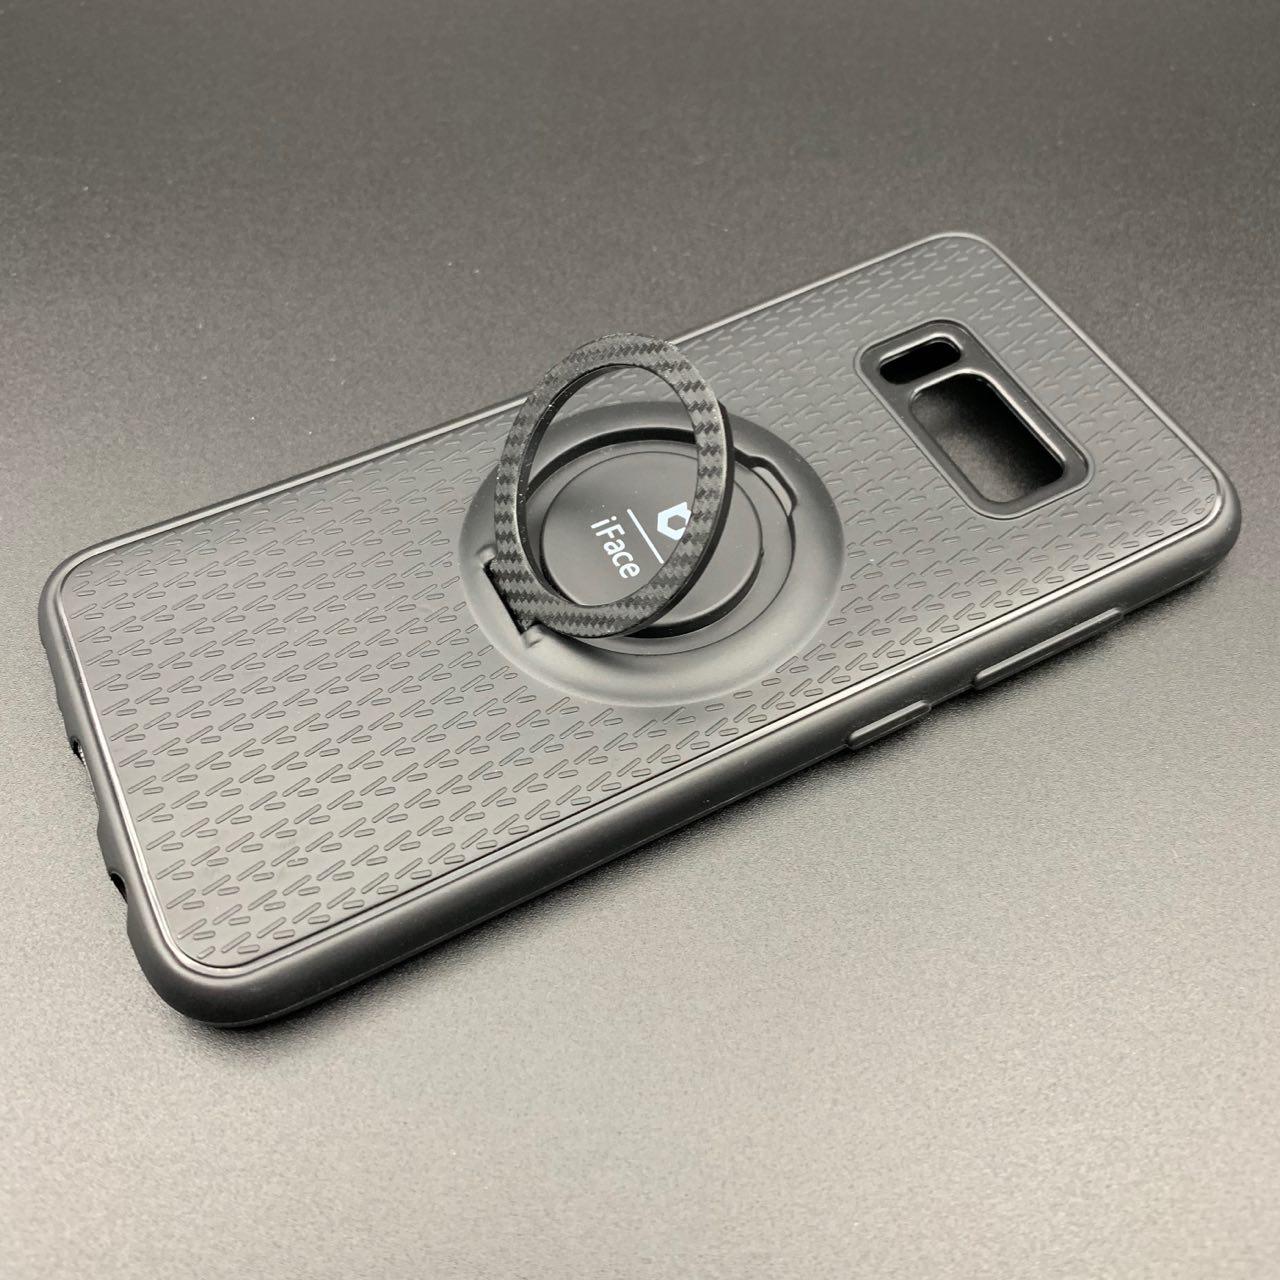 Чехол накладка iFace для SAMSUNG Galaxy S8 Plus (SM-G955), силикон, кольцо держатель, цвет черный.